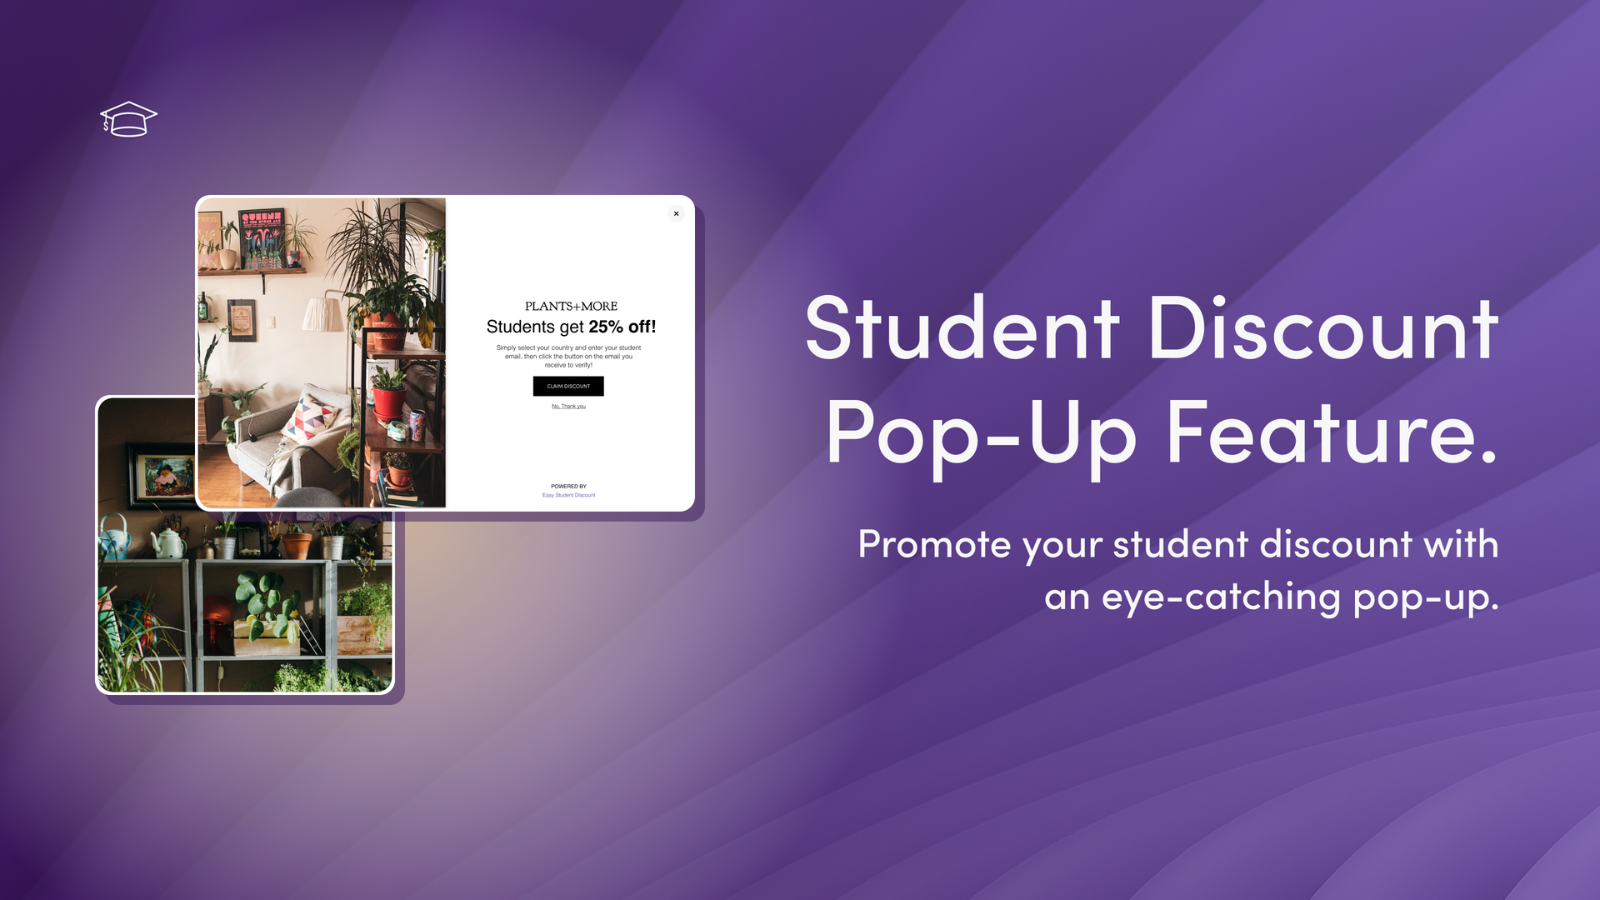 Agrega un pop up promocional de descuento para estudiantes 